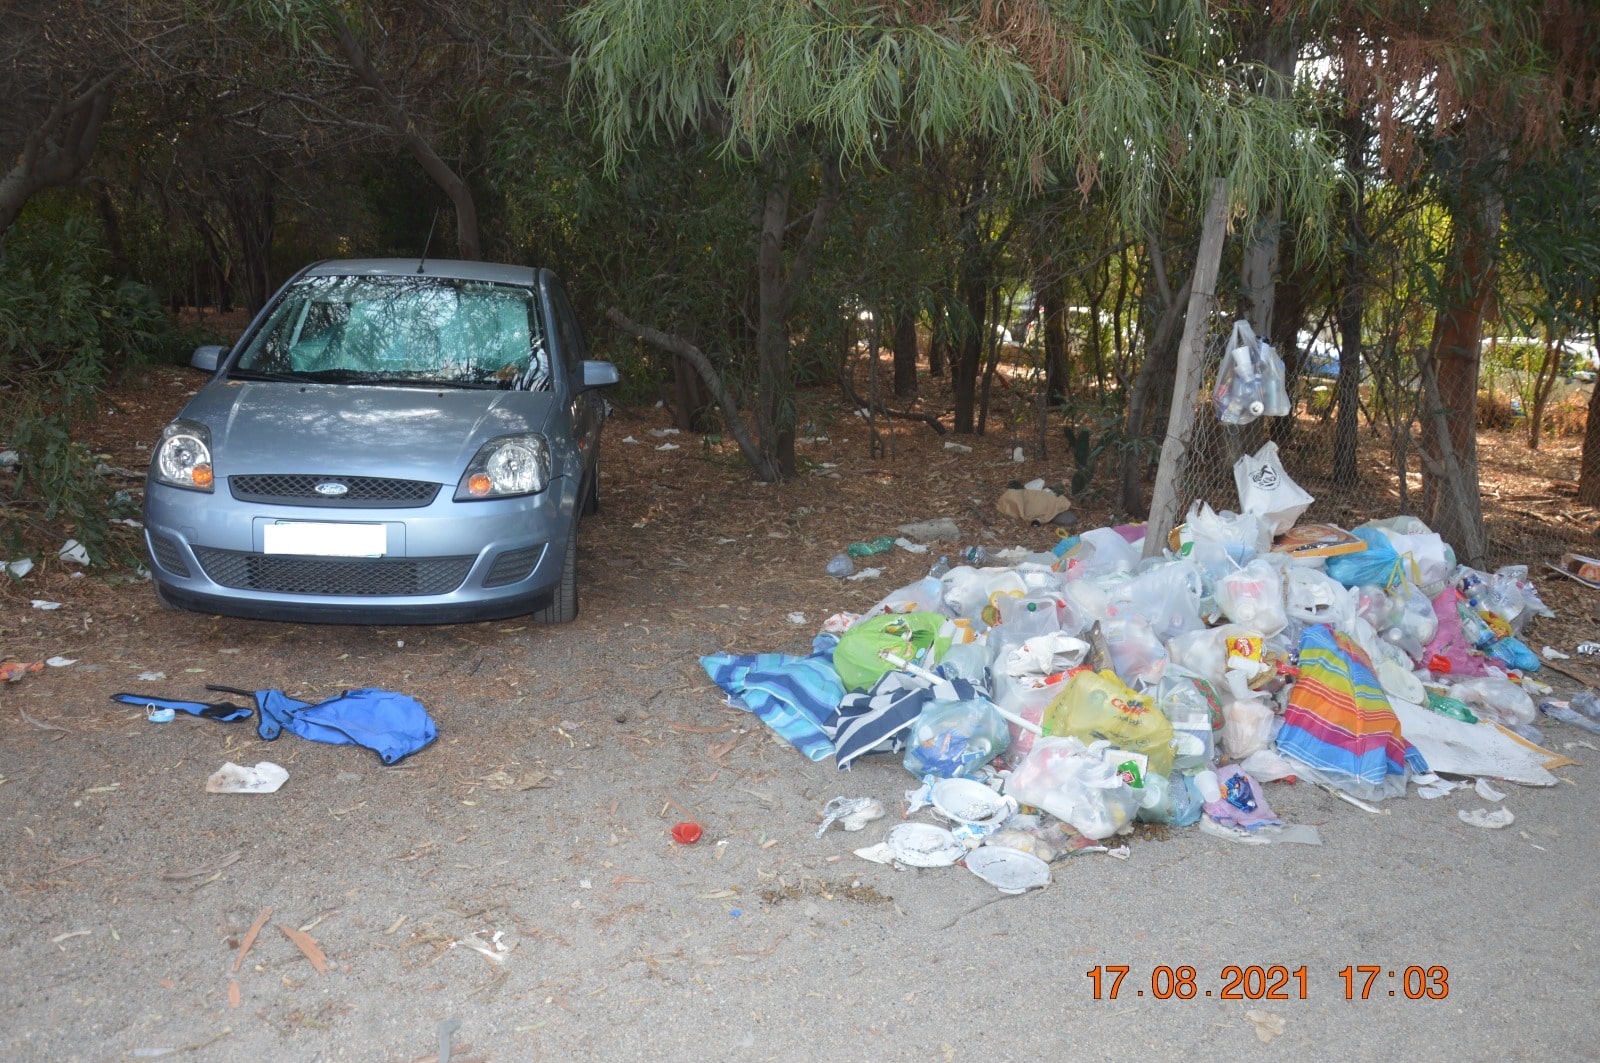 Abbandono rifiuti e accampamenti a Fondachello, controlli e sanzioni di polizia locale e Guardia Costiera